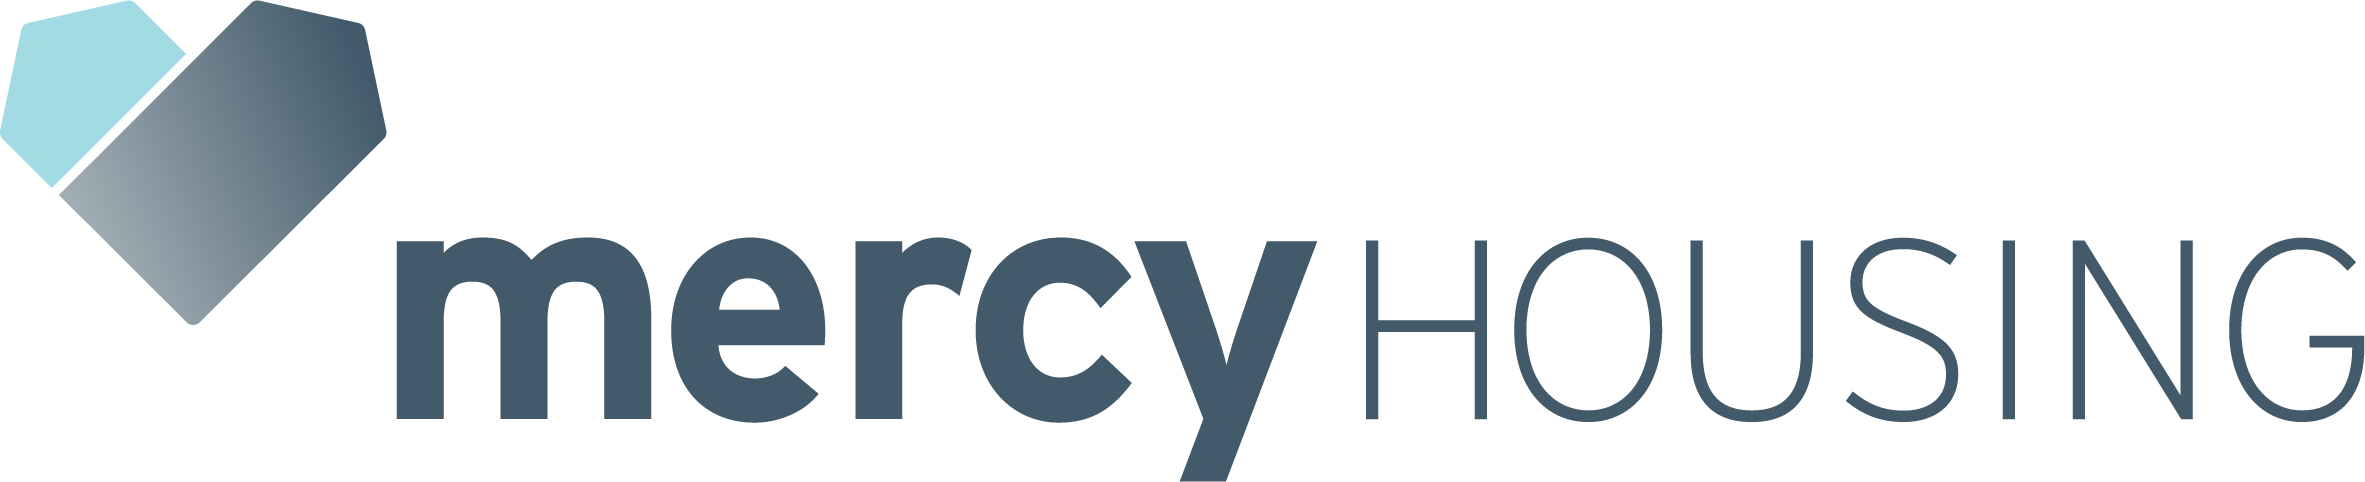 Mercy Housing logo